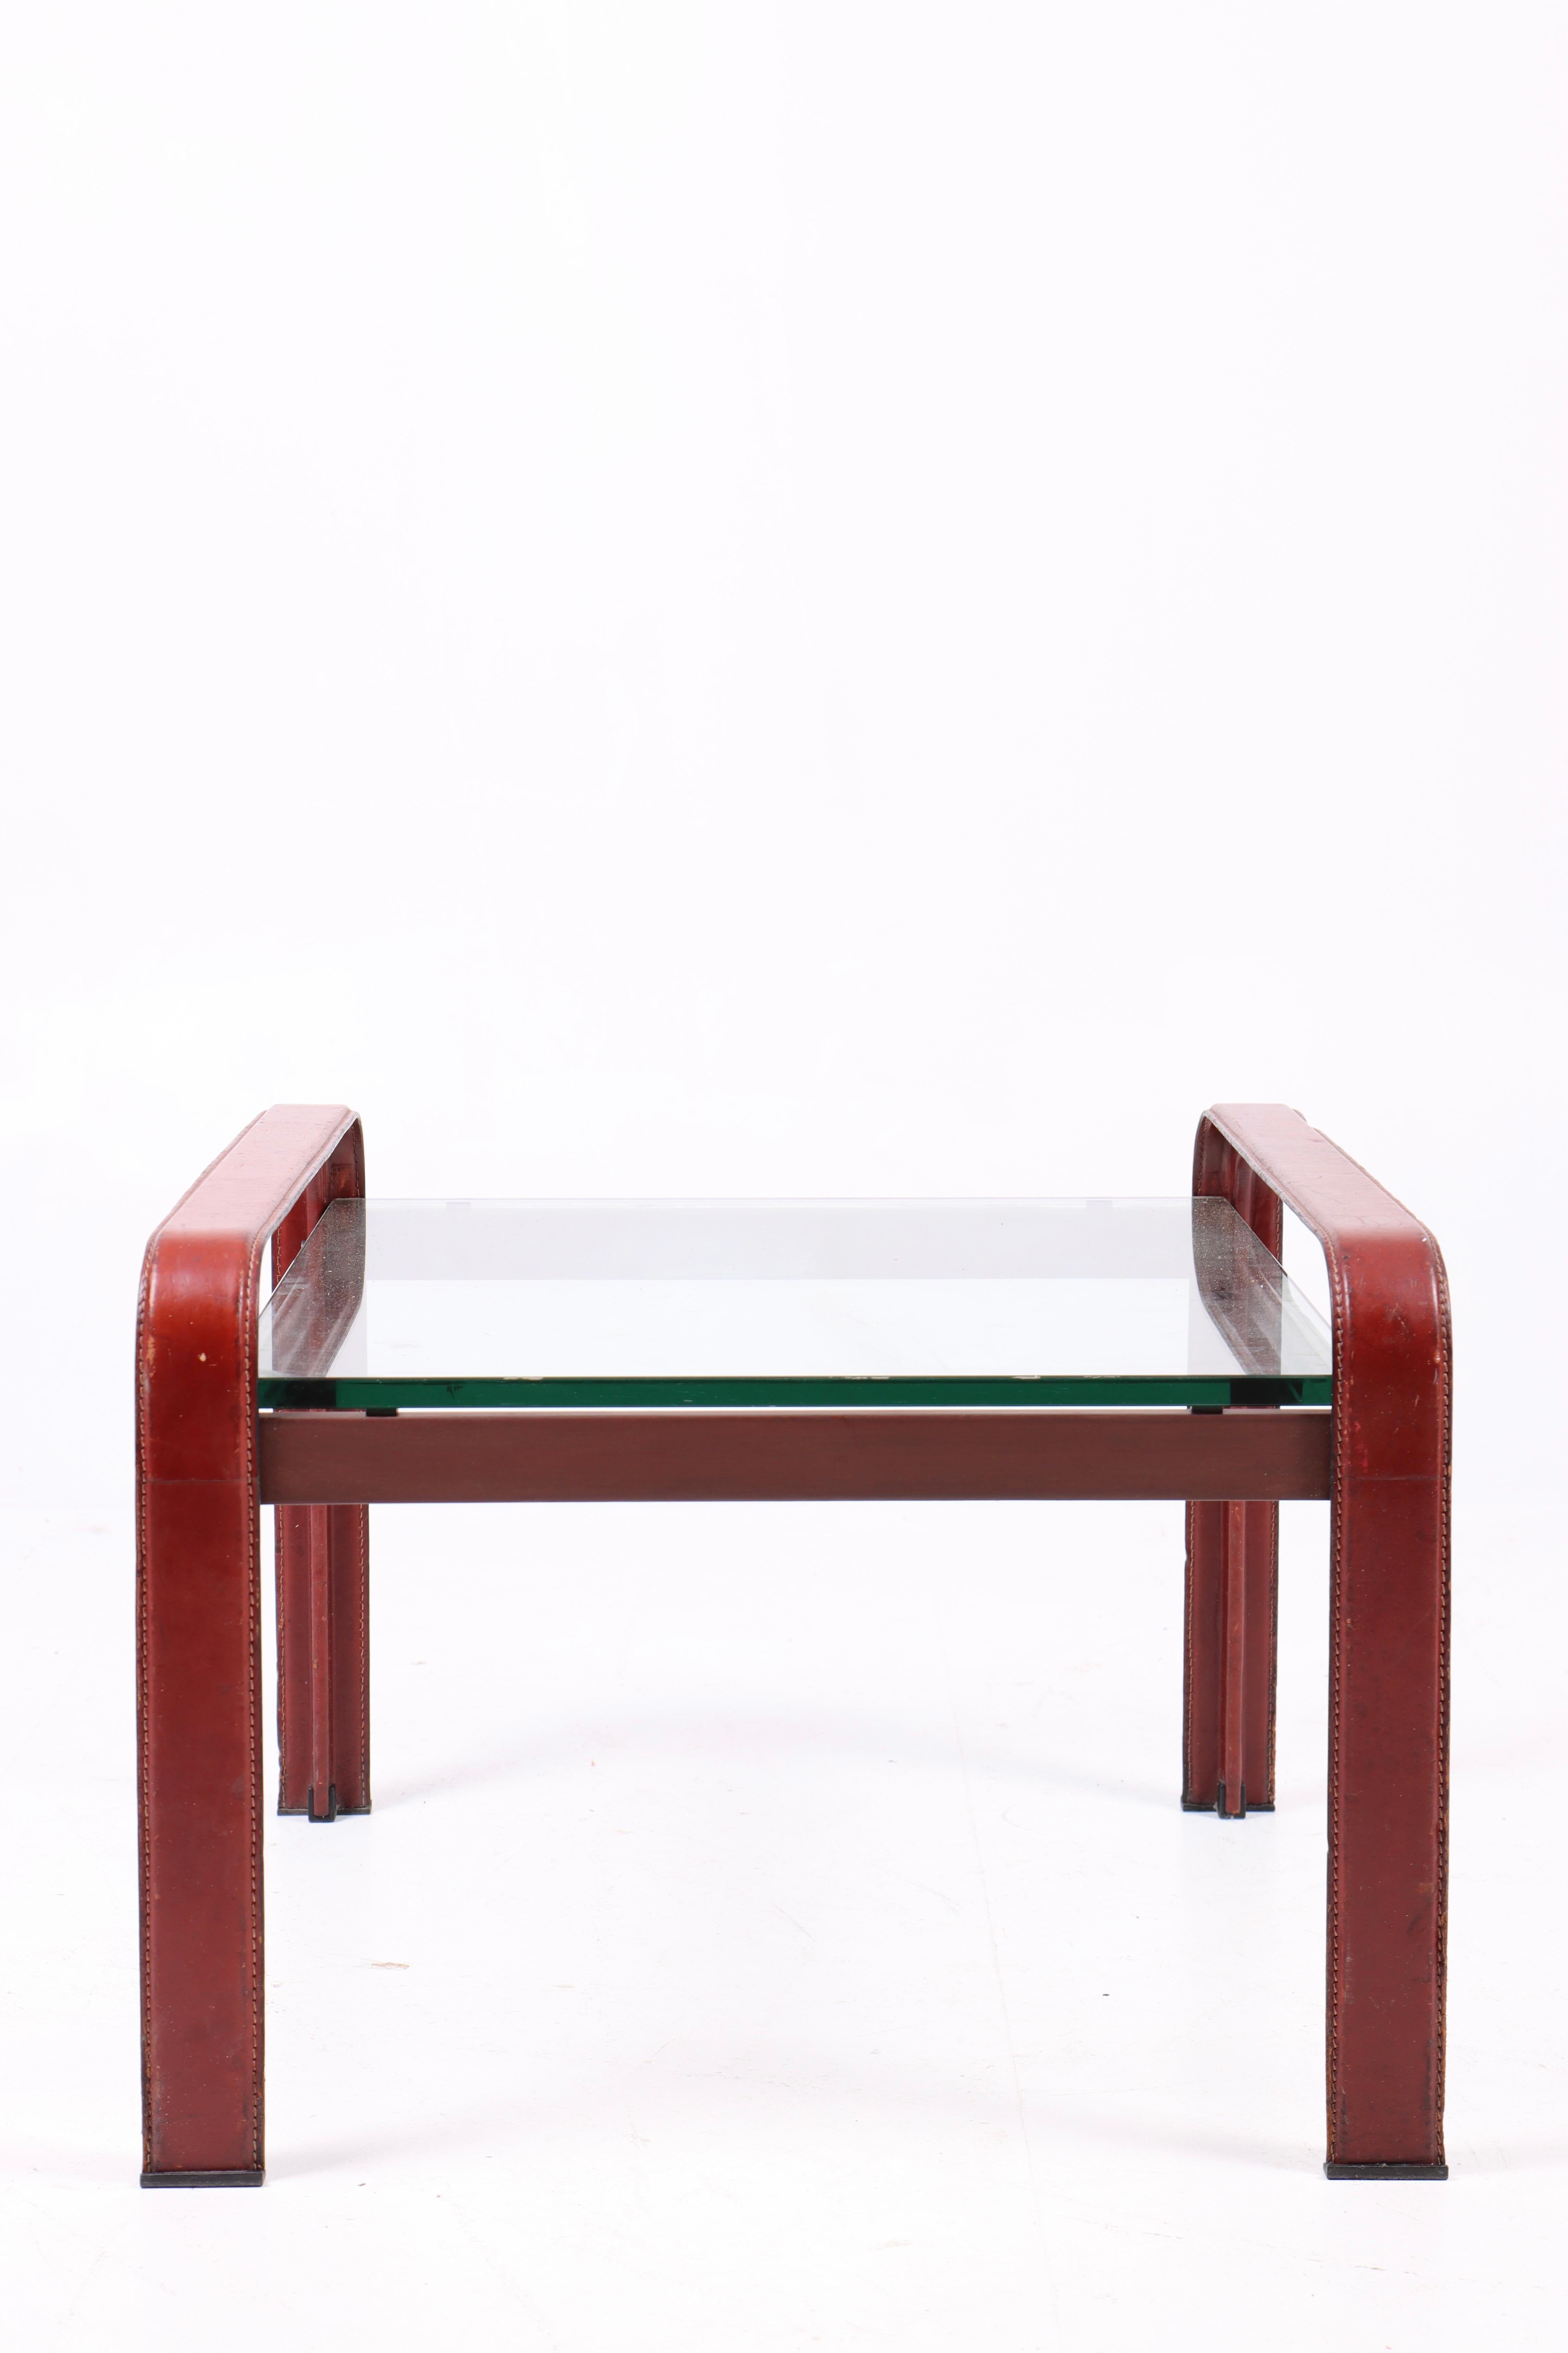 Niedriger Tisch aus patiniertem Leder. In den 1970er Jahren von Matteo Grassi in Italien entworfen und hergestellt. Toller Originalzustand.